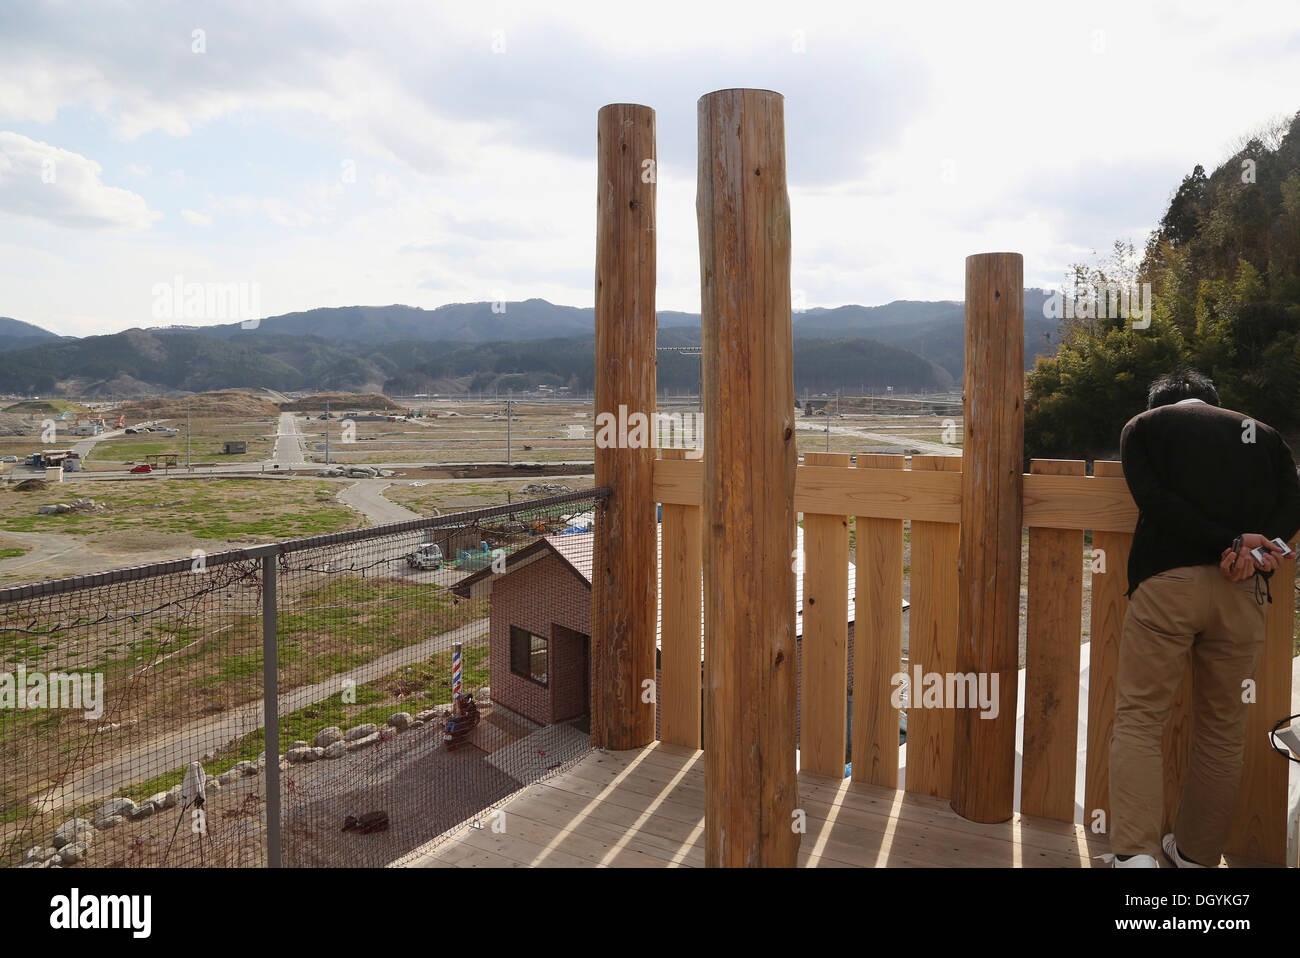 Le Japon après la tempête - Accueil pour tous dans Rikuzentakata, Rikuzentakata, au Japon. Architecte : Toyo Ito, Kumiko Inui, Akihisa Hirata une Banque D'Images